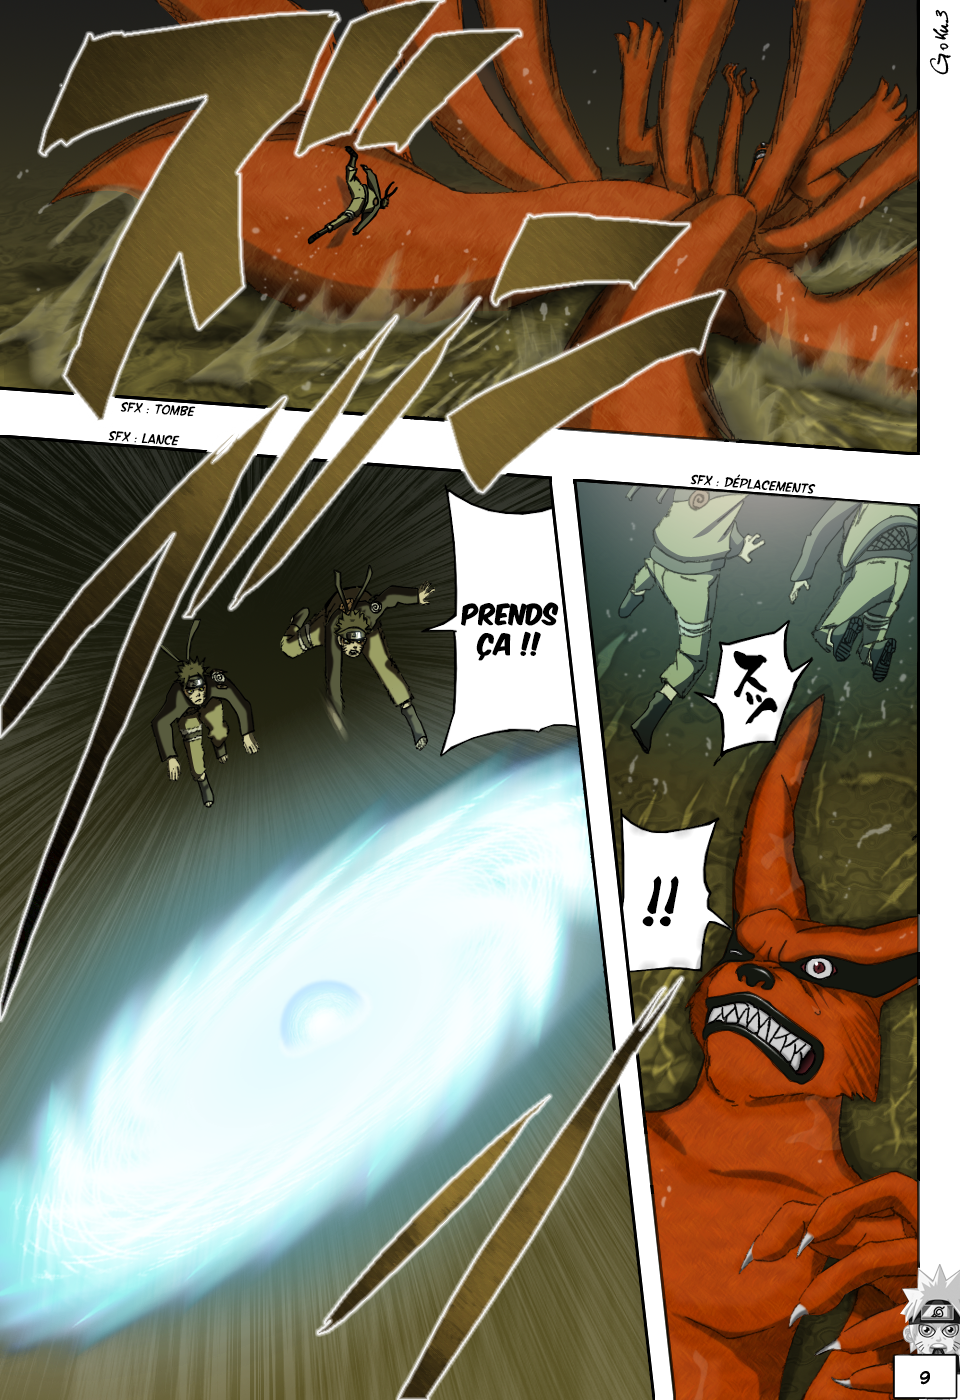 Naruto chapitre 497 colorisé - Page 8